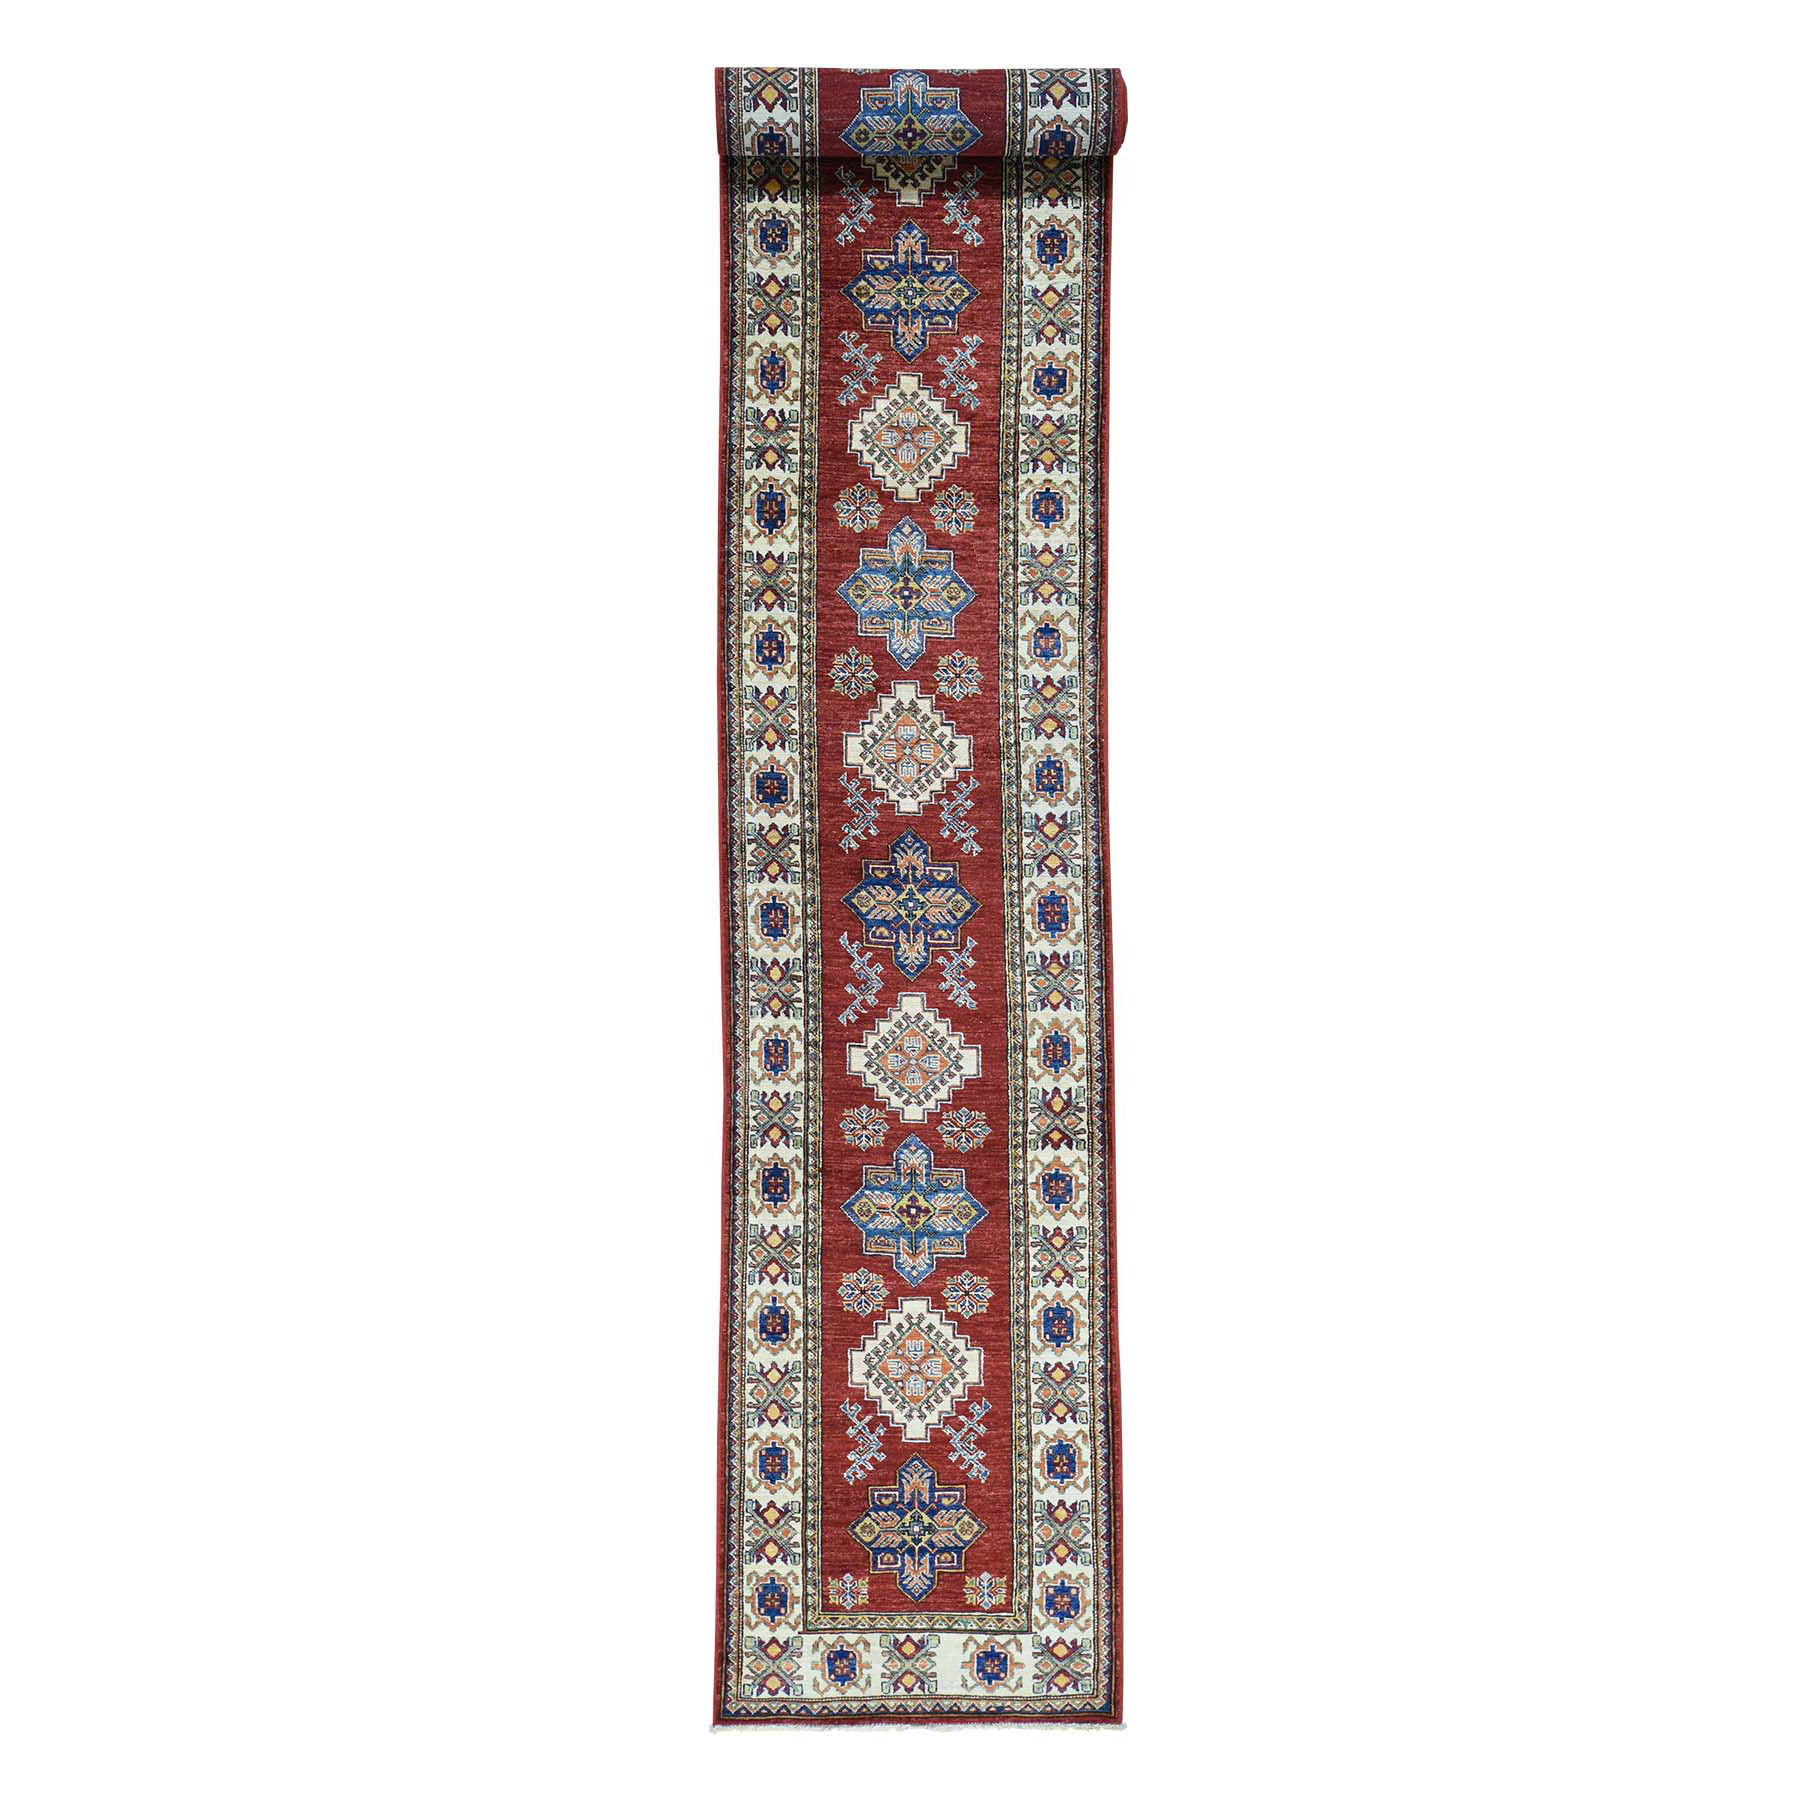 2'6"x18'3" Hand Woven Super Kazak Tribal Design XL Runner Carpet 